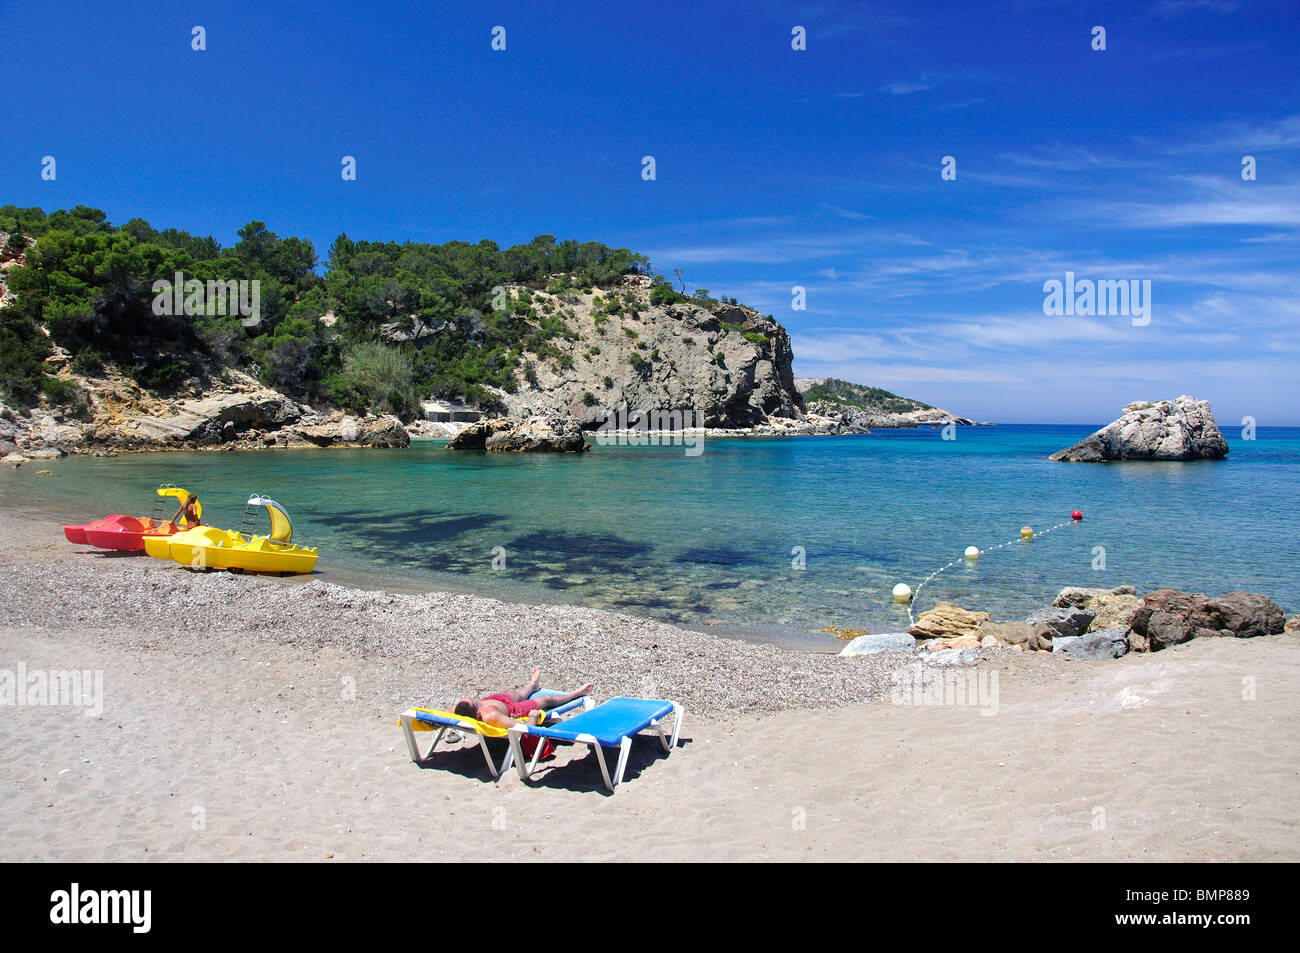 Beach view, Cala Xarraca, Ibiza, Balearic Islands, Spain Stock Photo